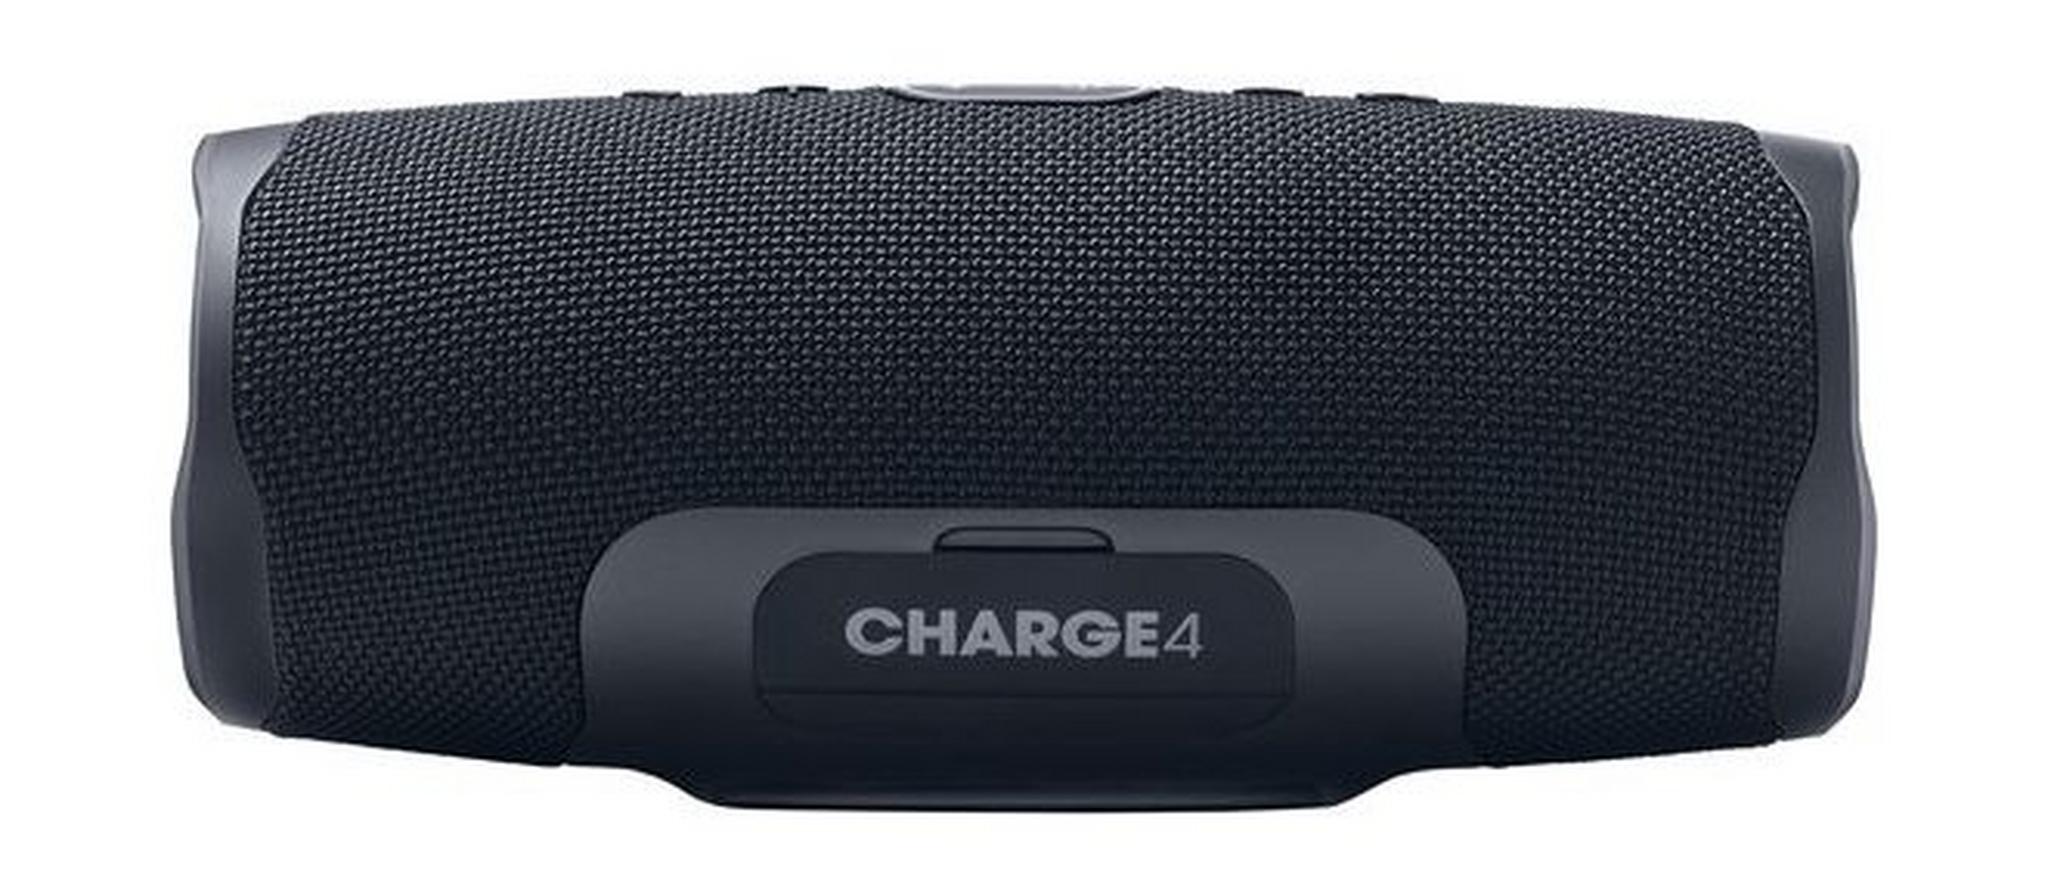 JBL Charge 4 Waterproof Portable Bluetooth Speaker - Black